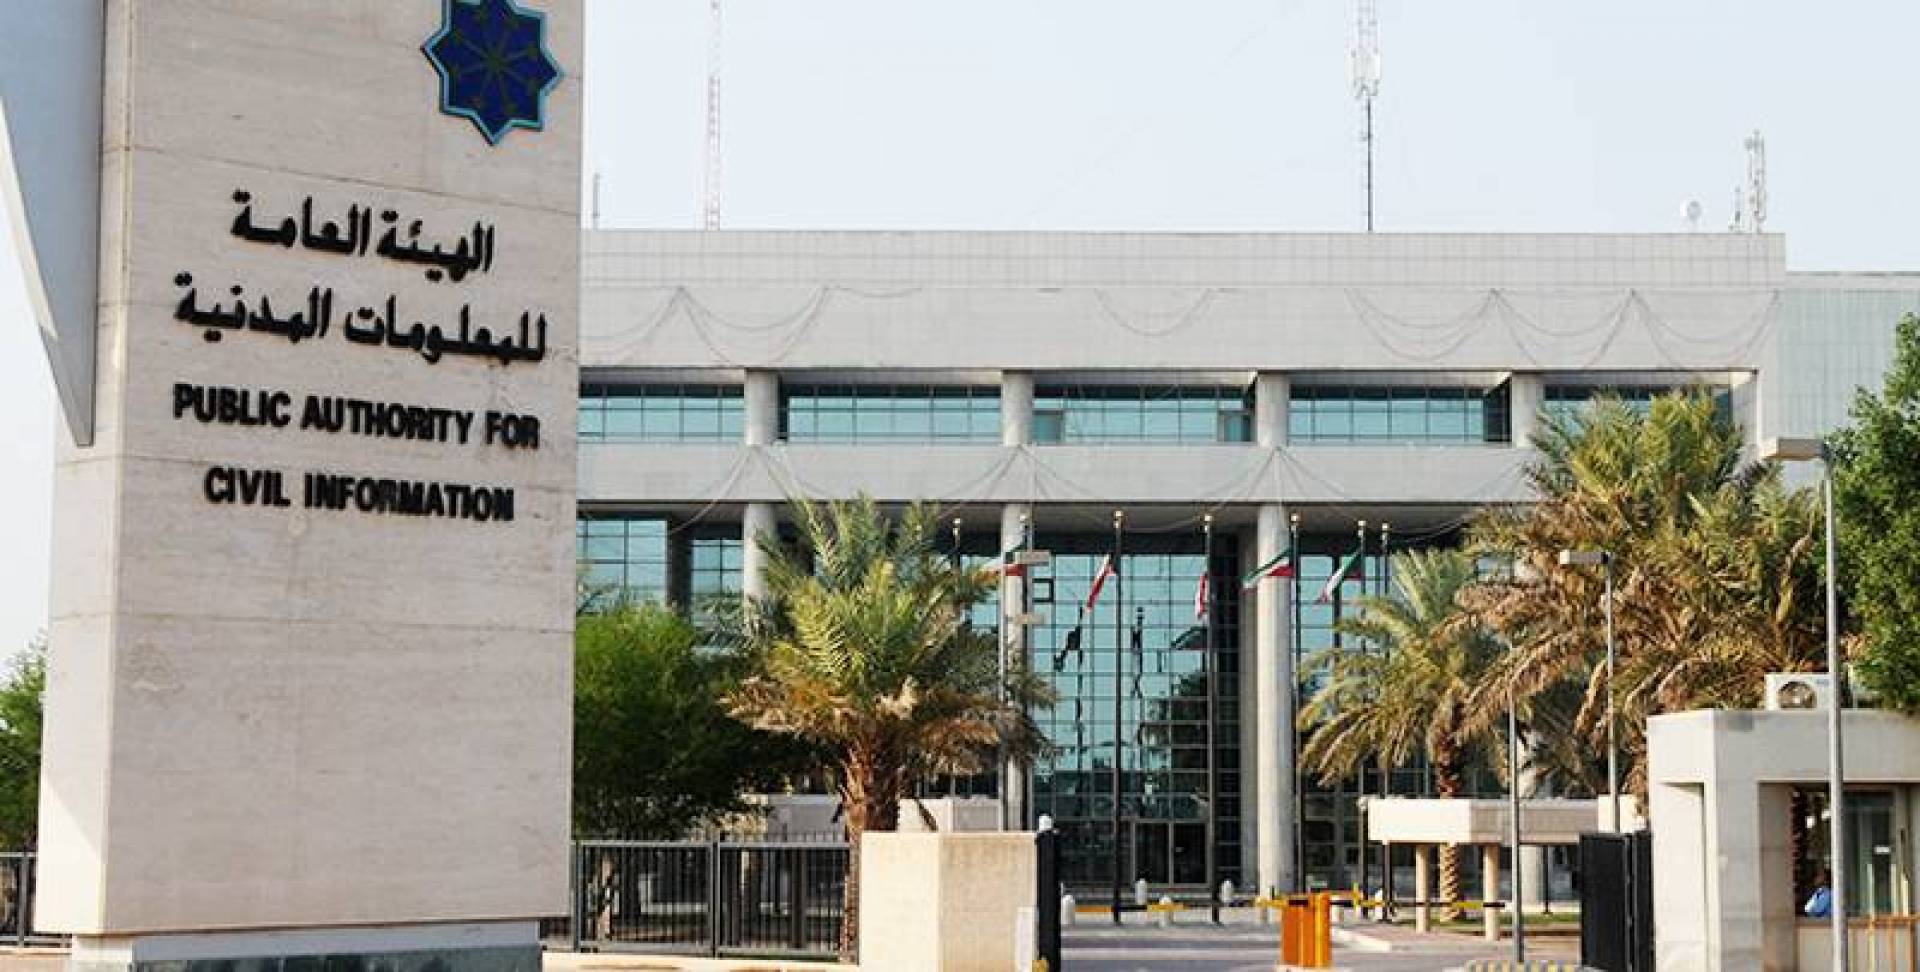 كل ما تريد معرفته عن الهيئة العامة للمعلومات المدنية في الكويت